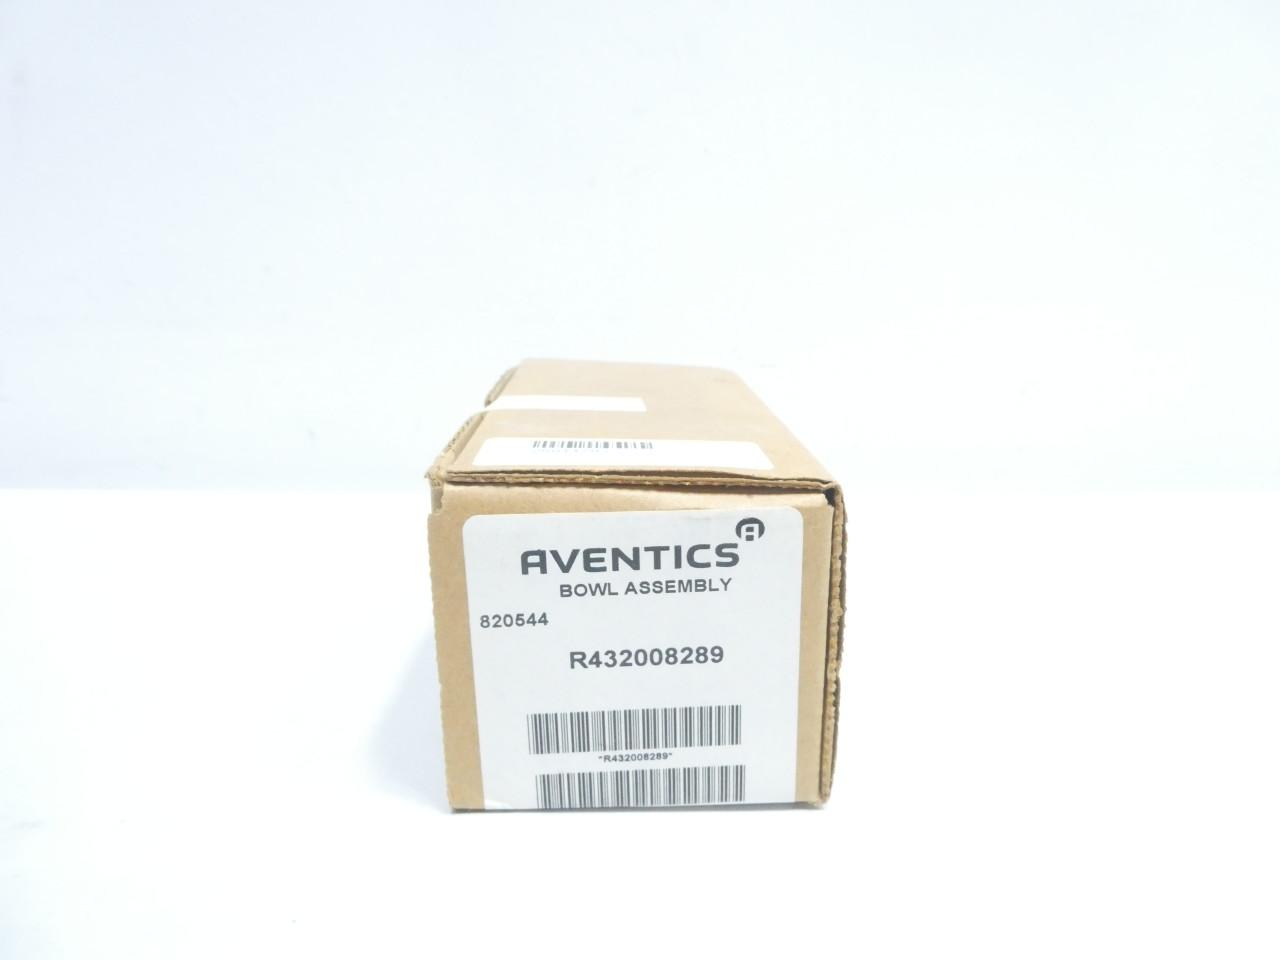 AVENTICS R432008289